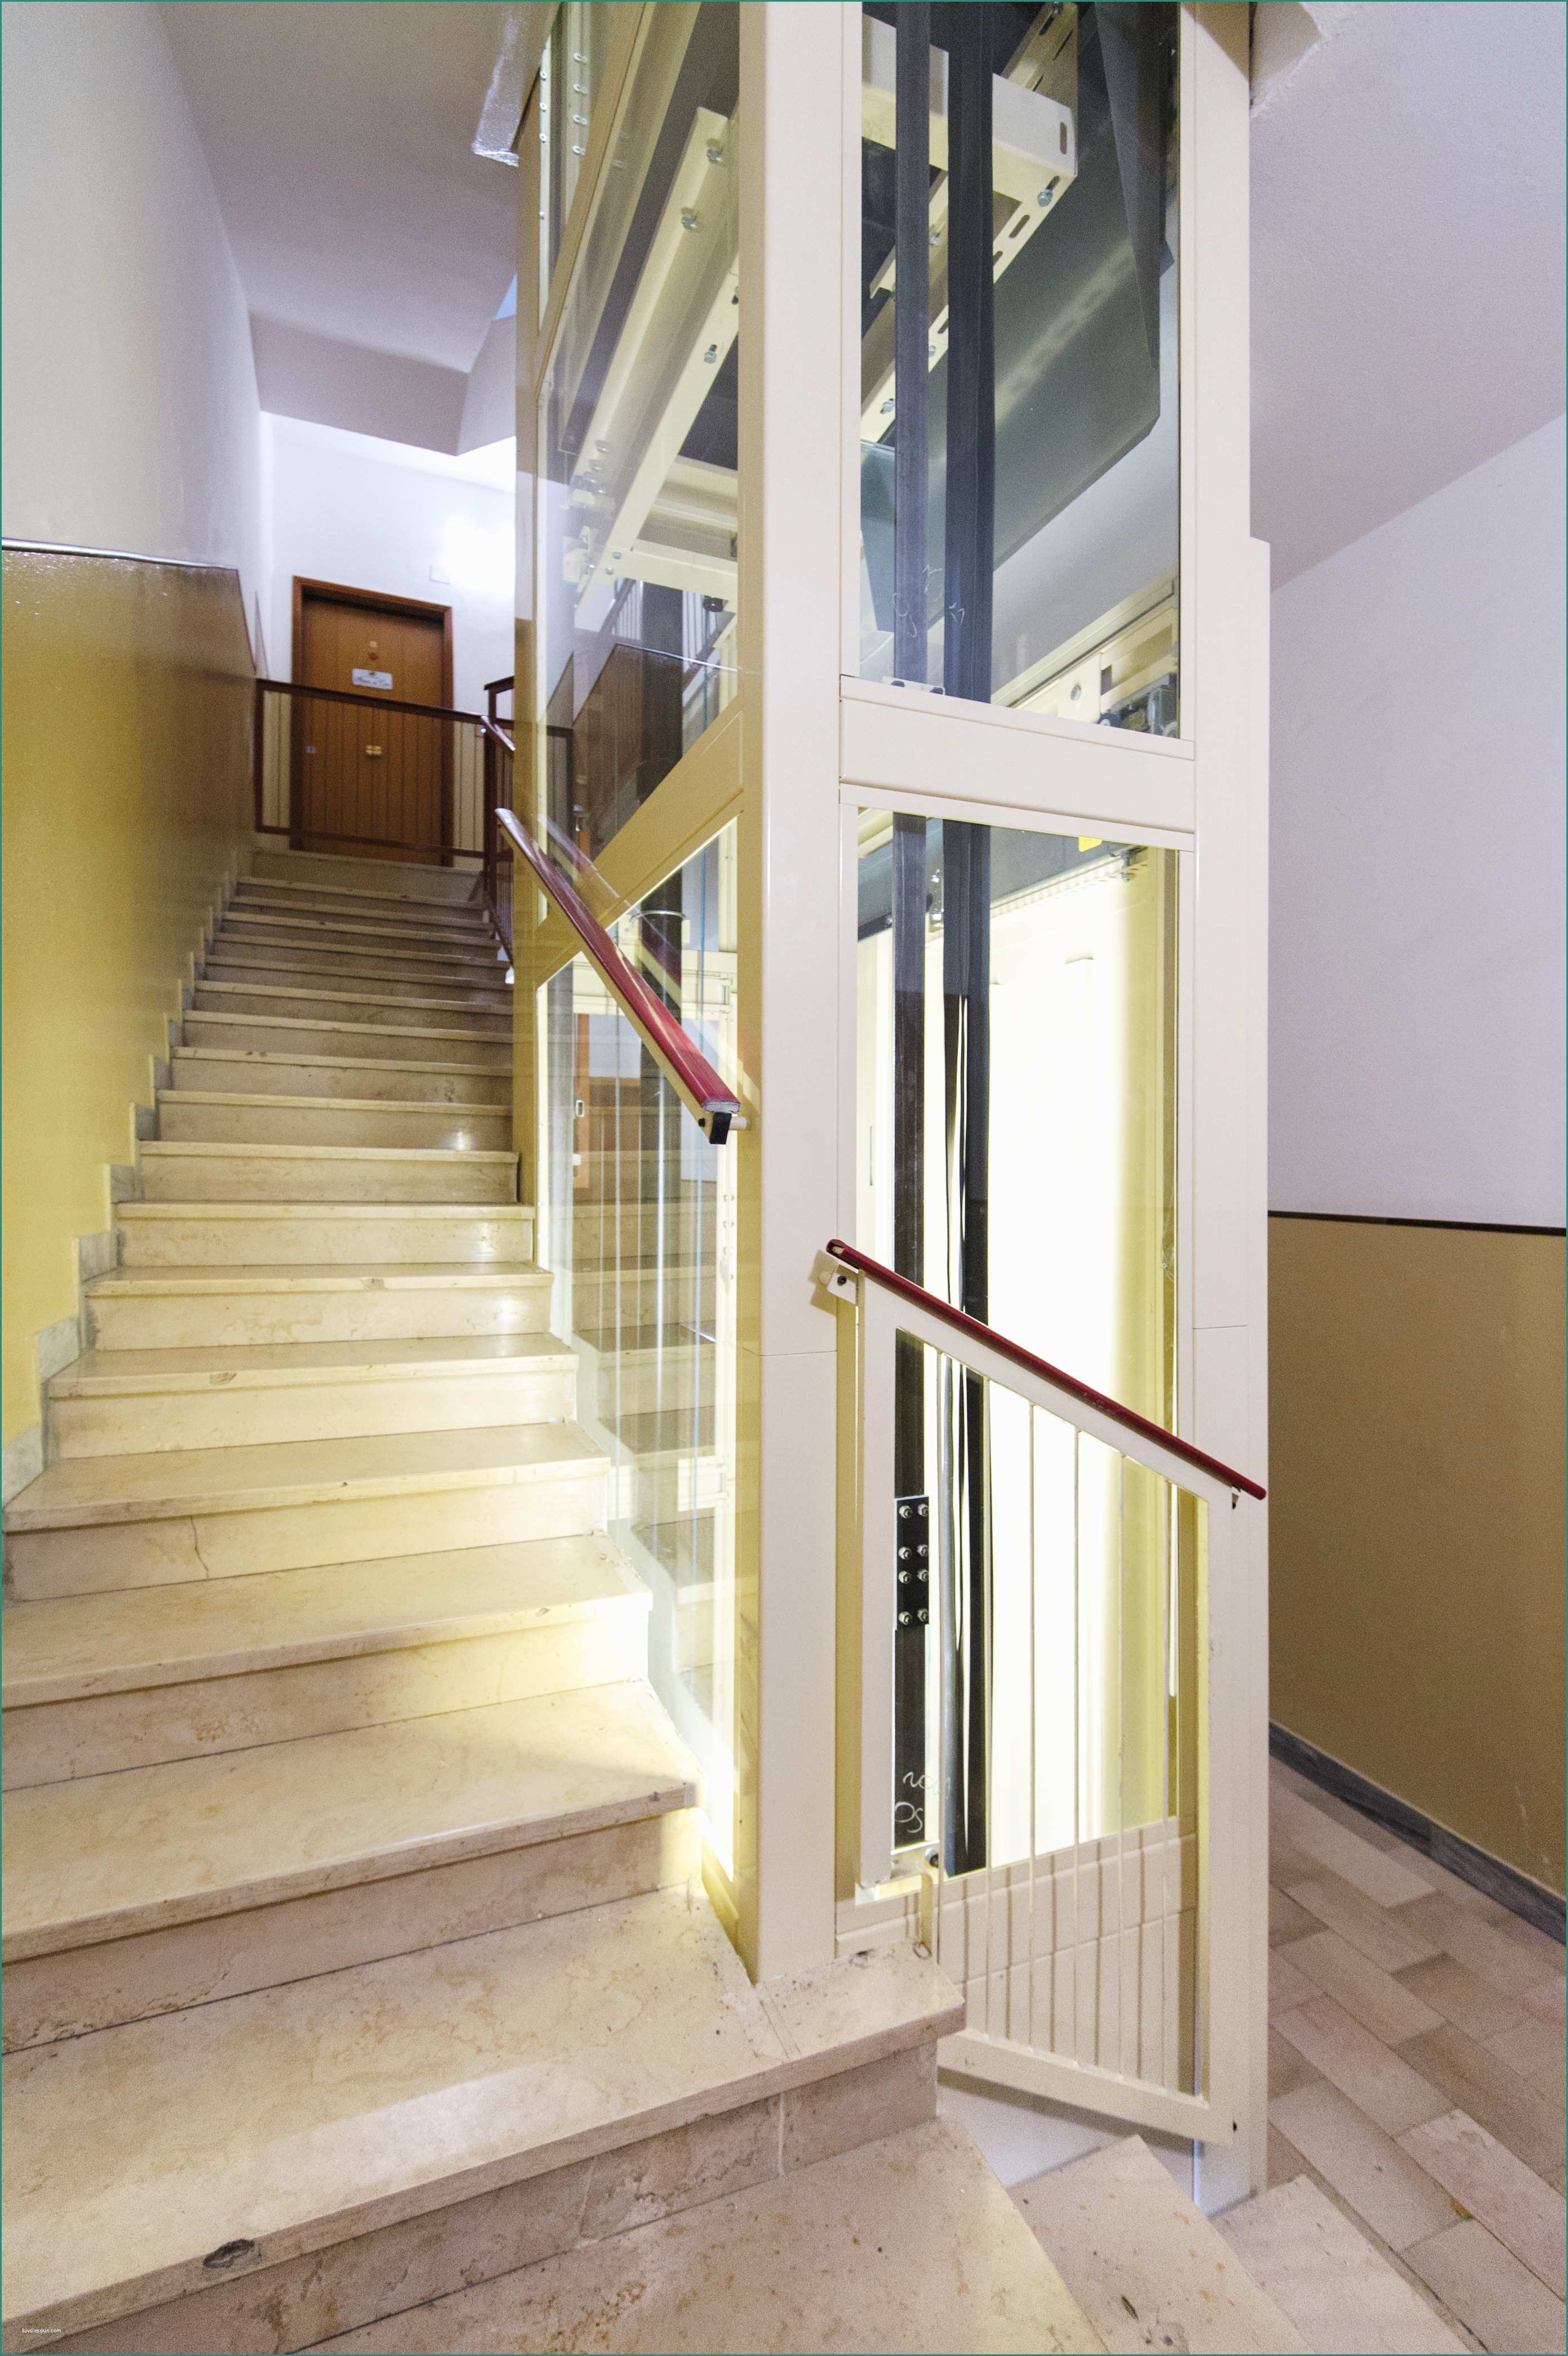 Servoscala Dimensioni Minime E Idee Di Sedia ascensore Per Scale Prezzi Image Gallery